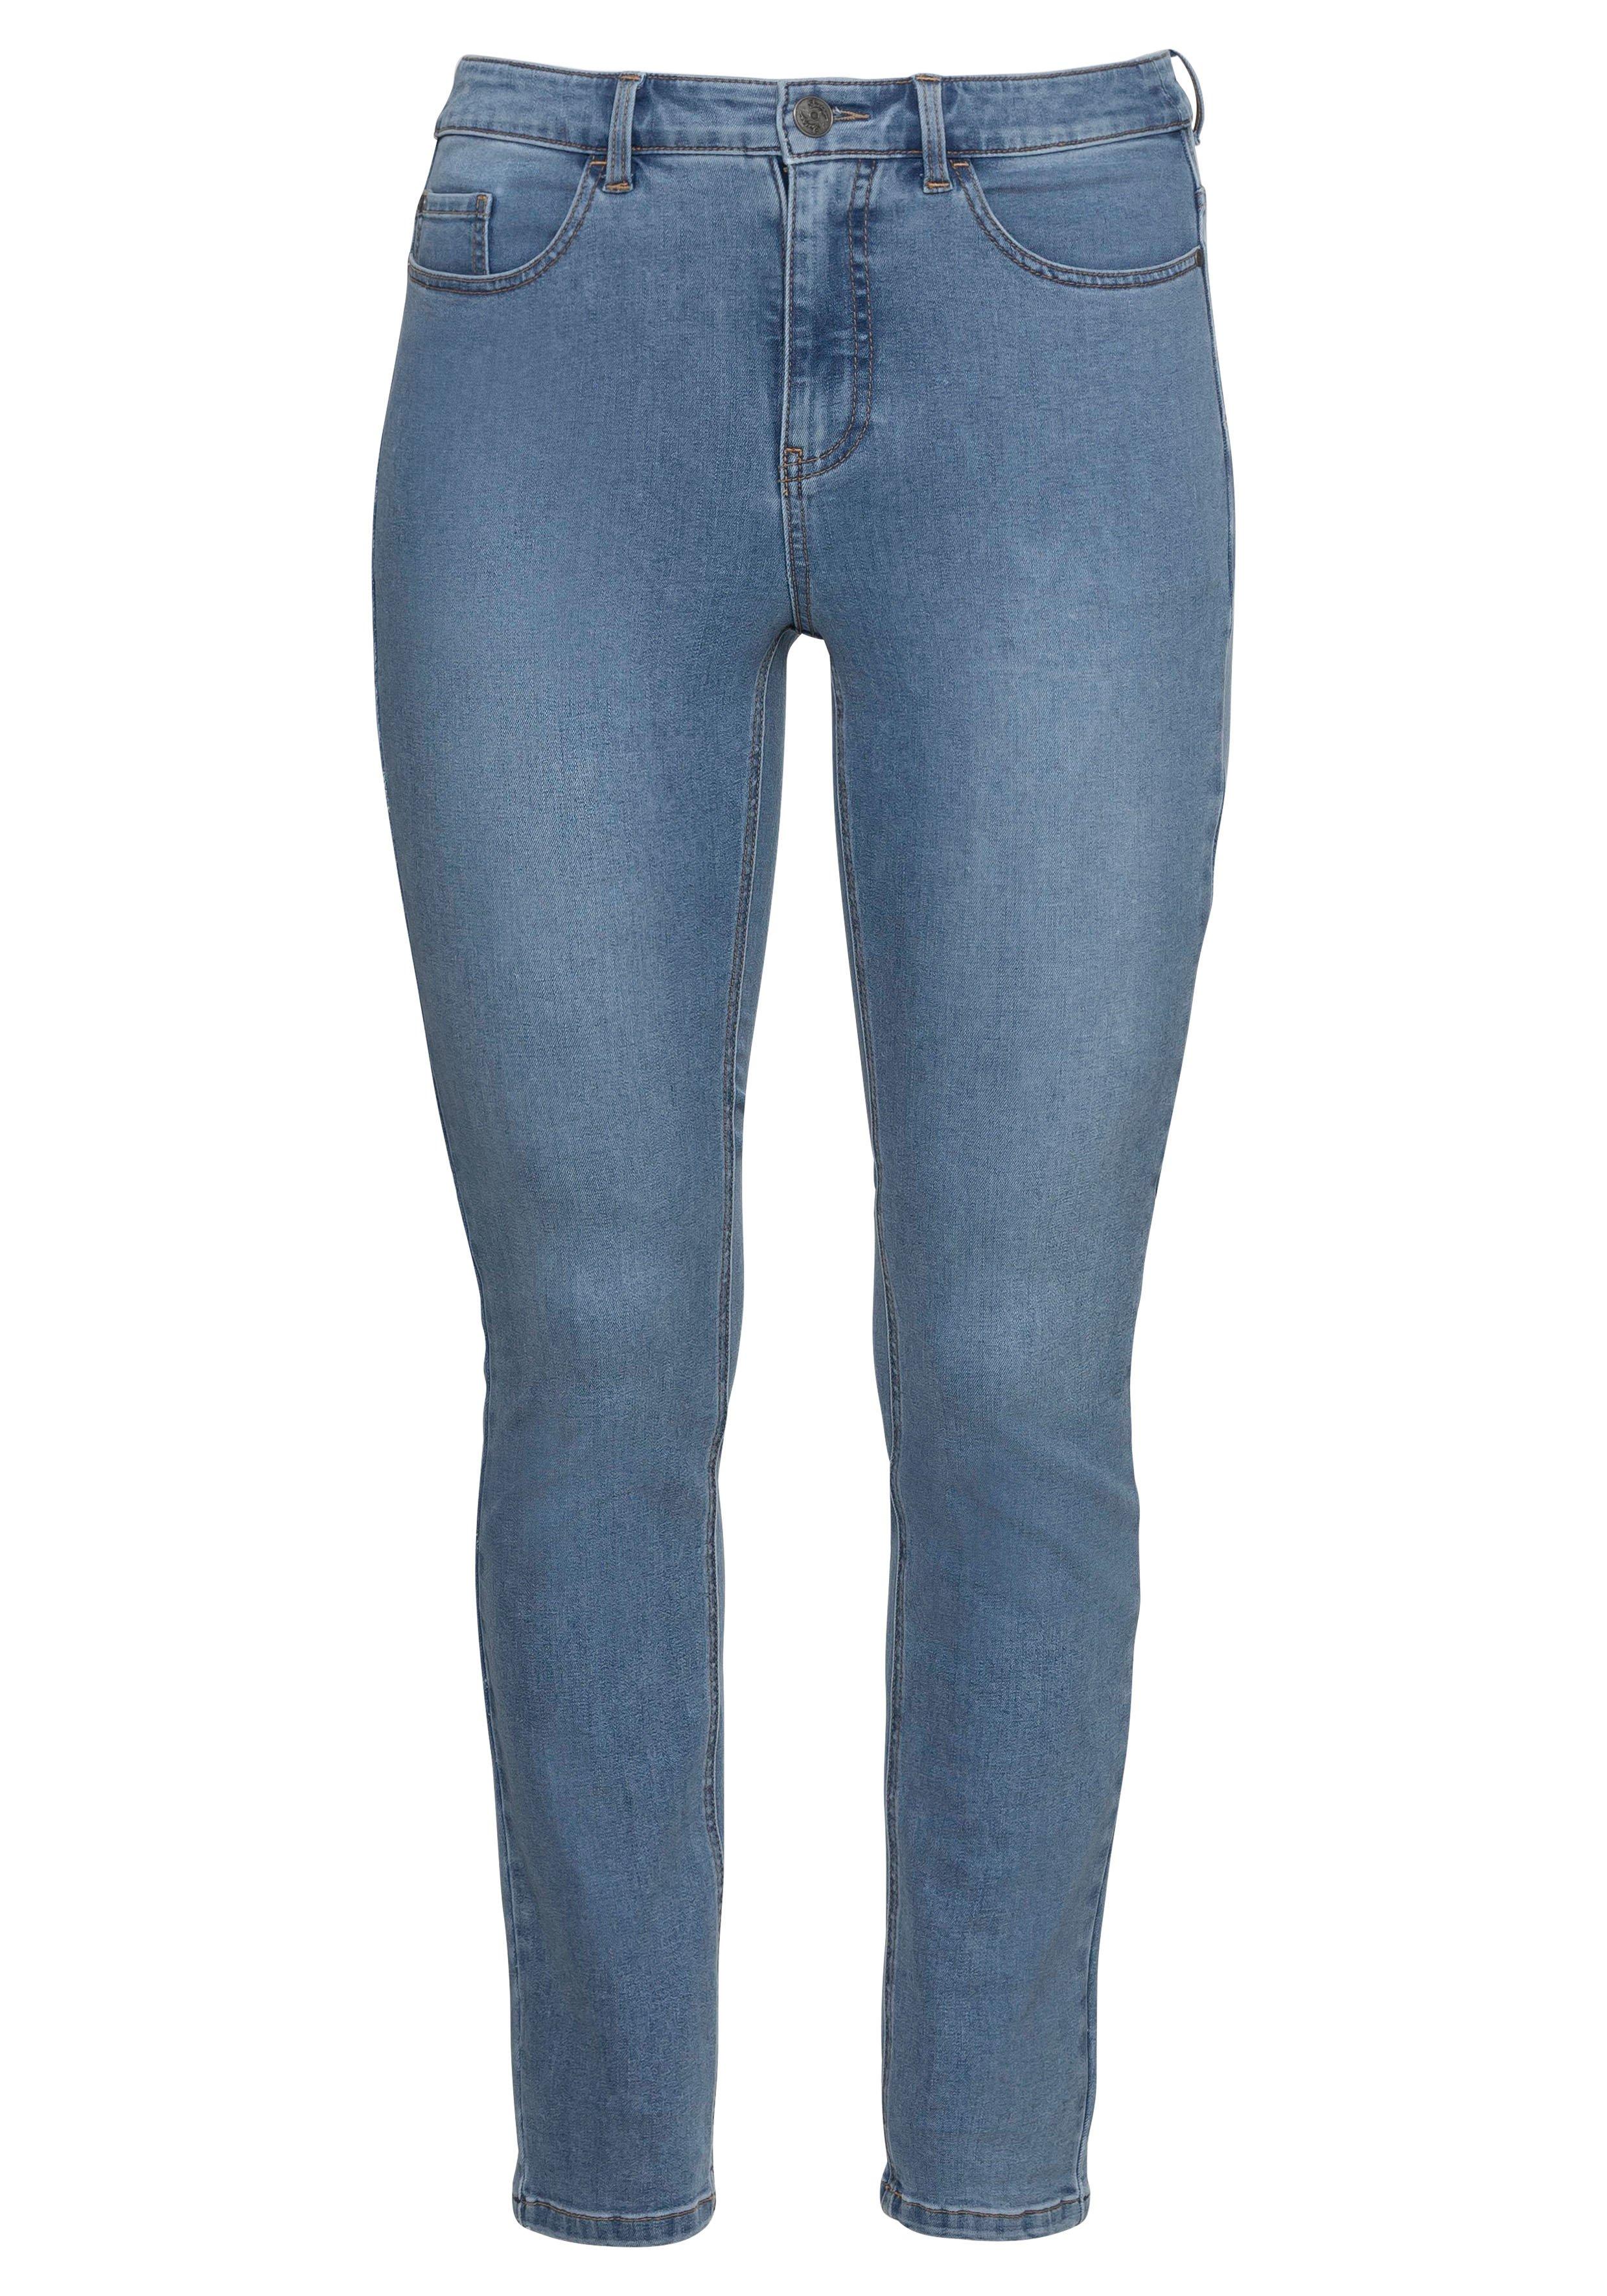 Skinny Power-Stretch-Jeans in 5-Pocket-Form - dark sheego Denim blue 